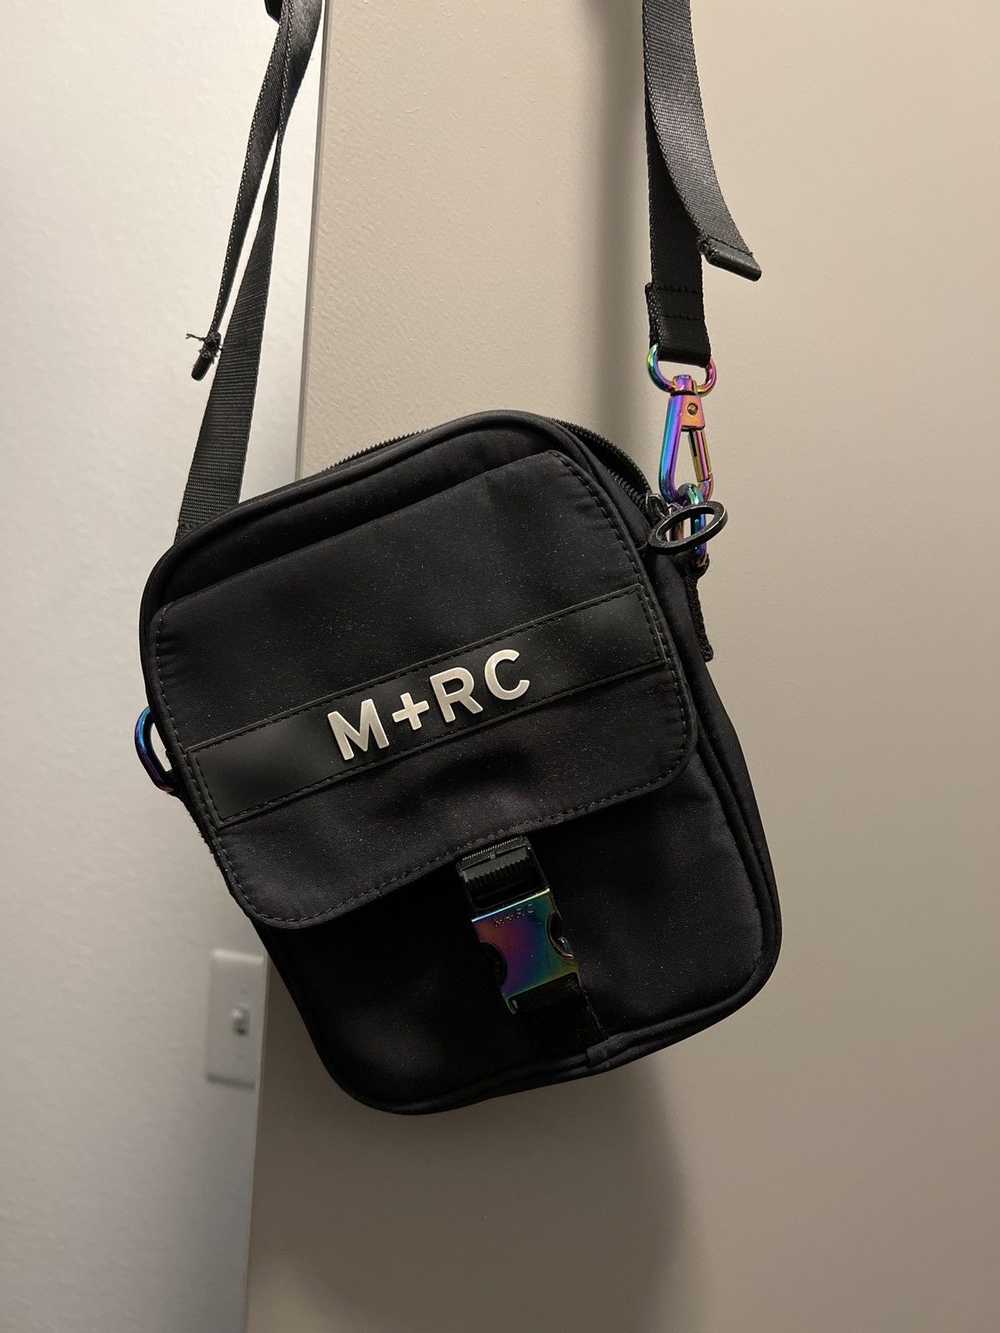 M+Rc Noir M+RC NOIR BLACK RAINBOW BAG - image 2